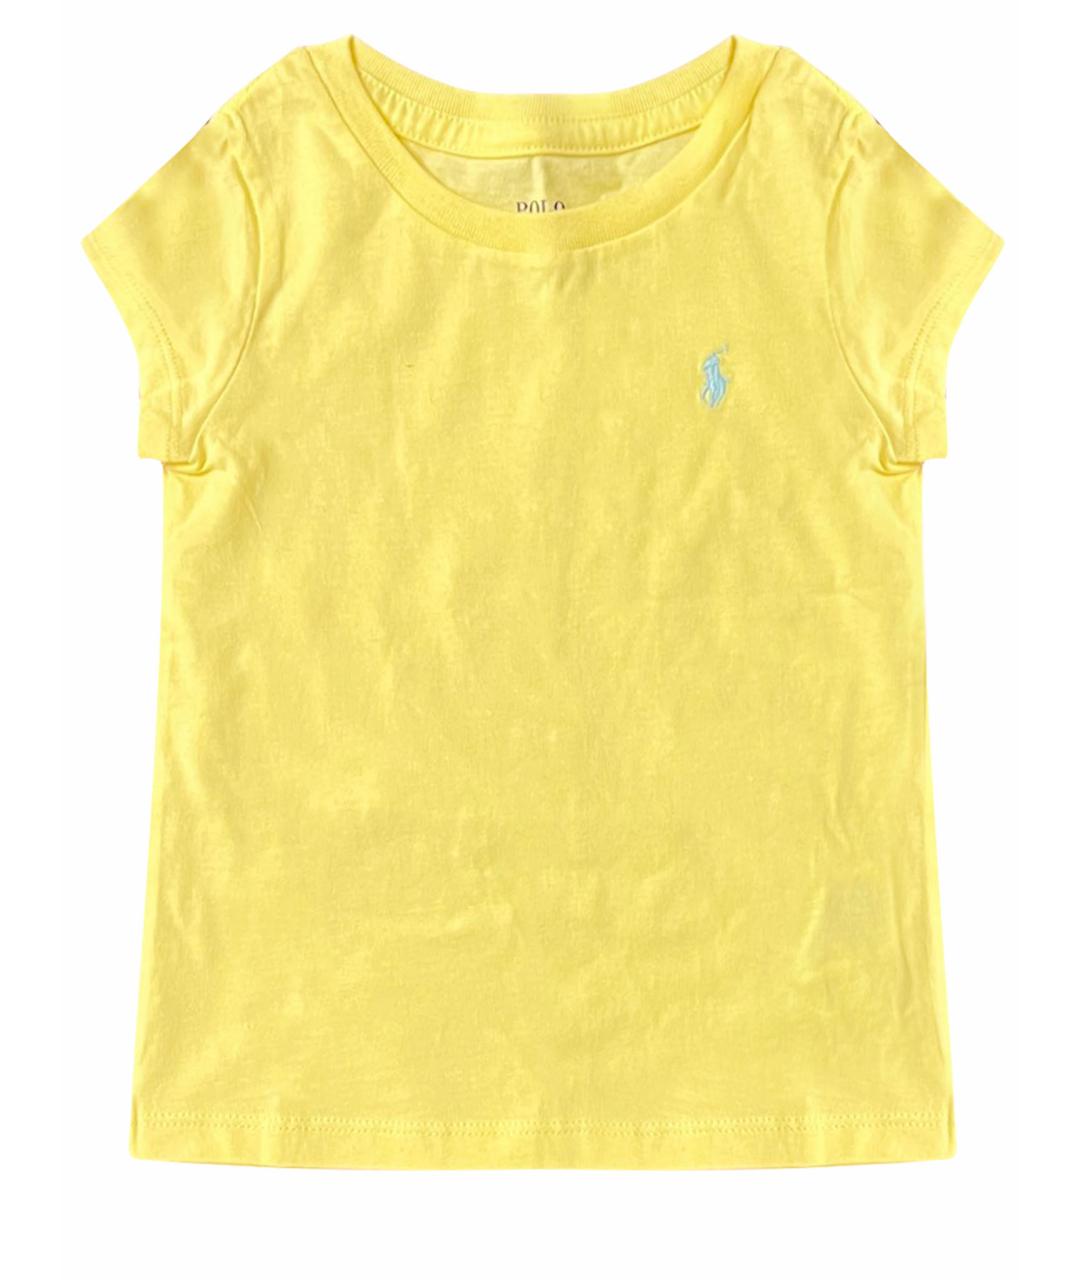 POLO RALPH LAUREN Желтый хлопковый футболка / топ, фото 1